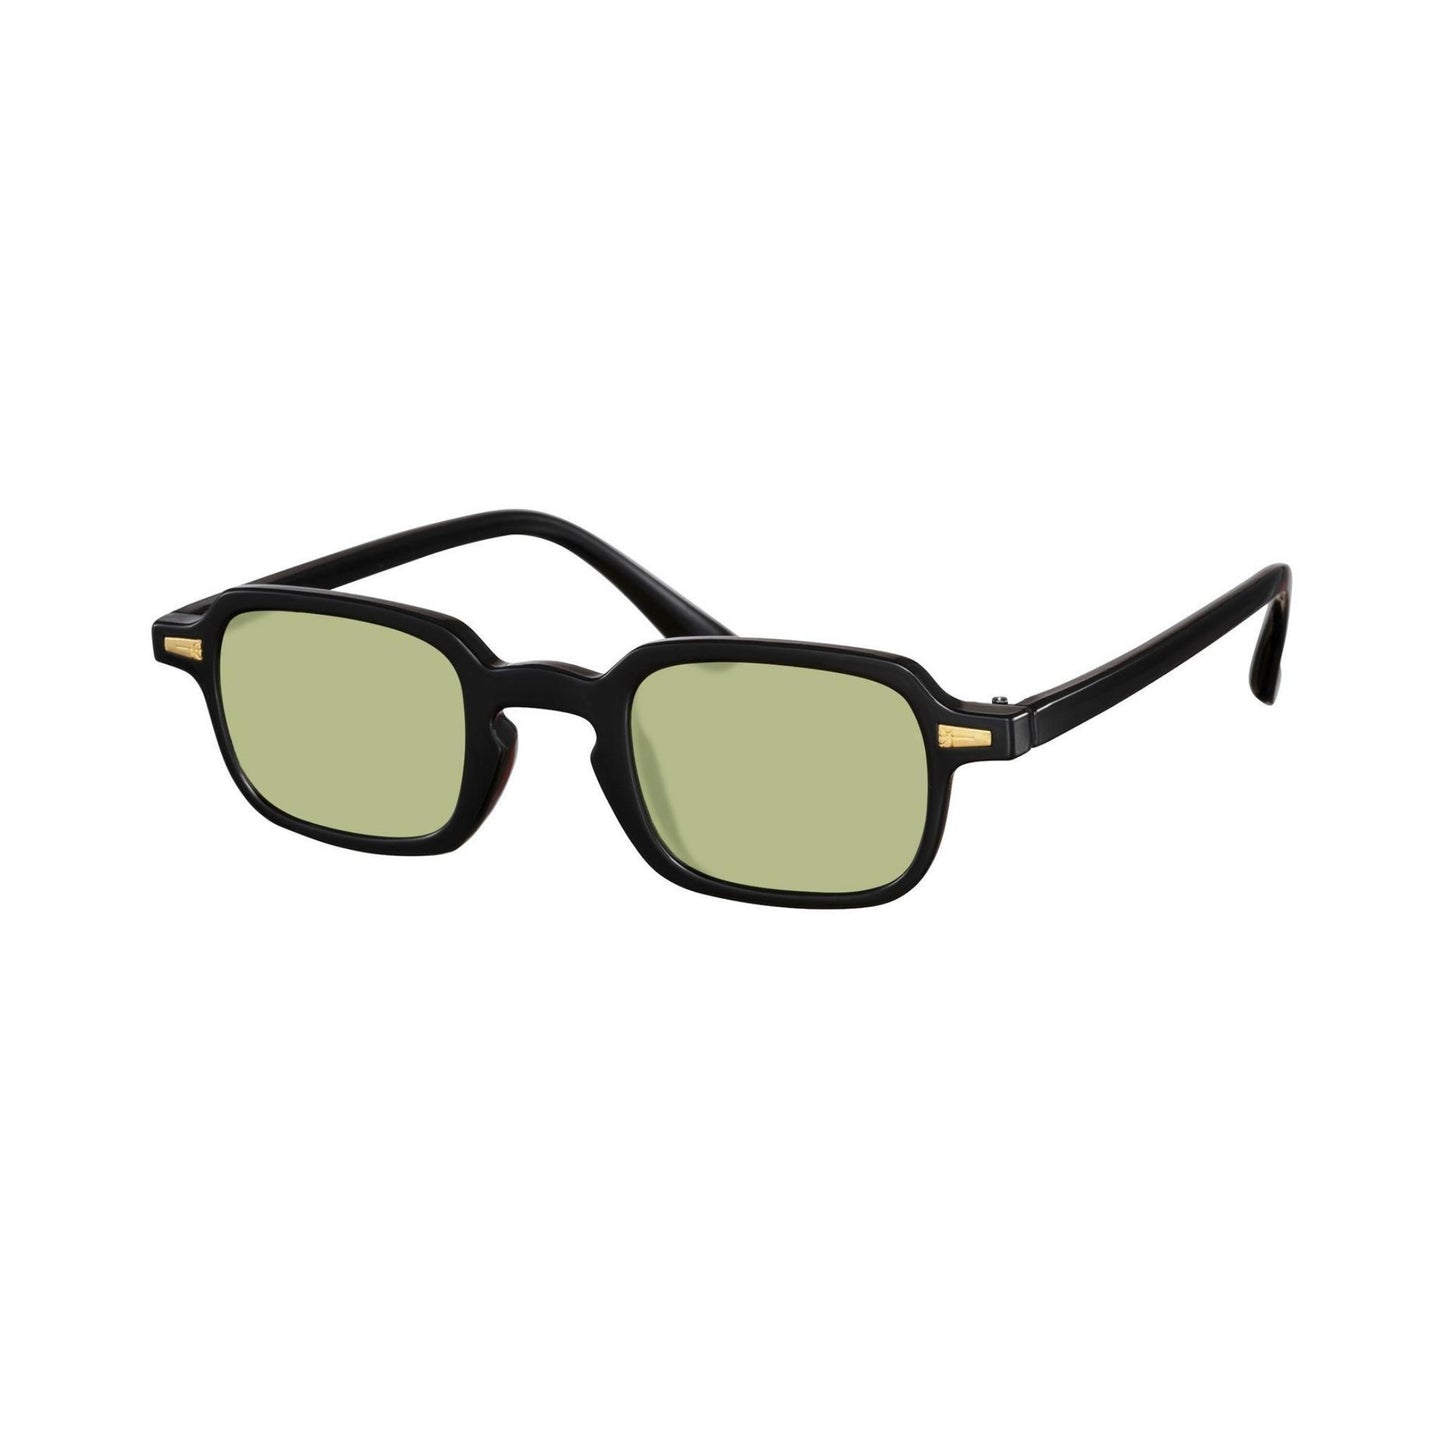 Τετράγωνα Γυαλιά ηλίου Luminous της Exposure Sunglasses με προστασία UV400 με μαύρο σκελετό και πράσινο φακό. Πλάγια προβολή.